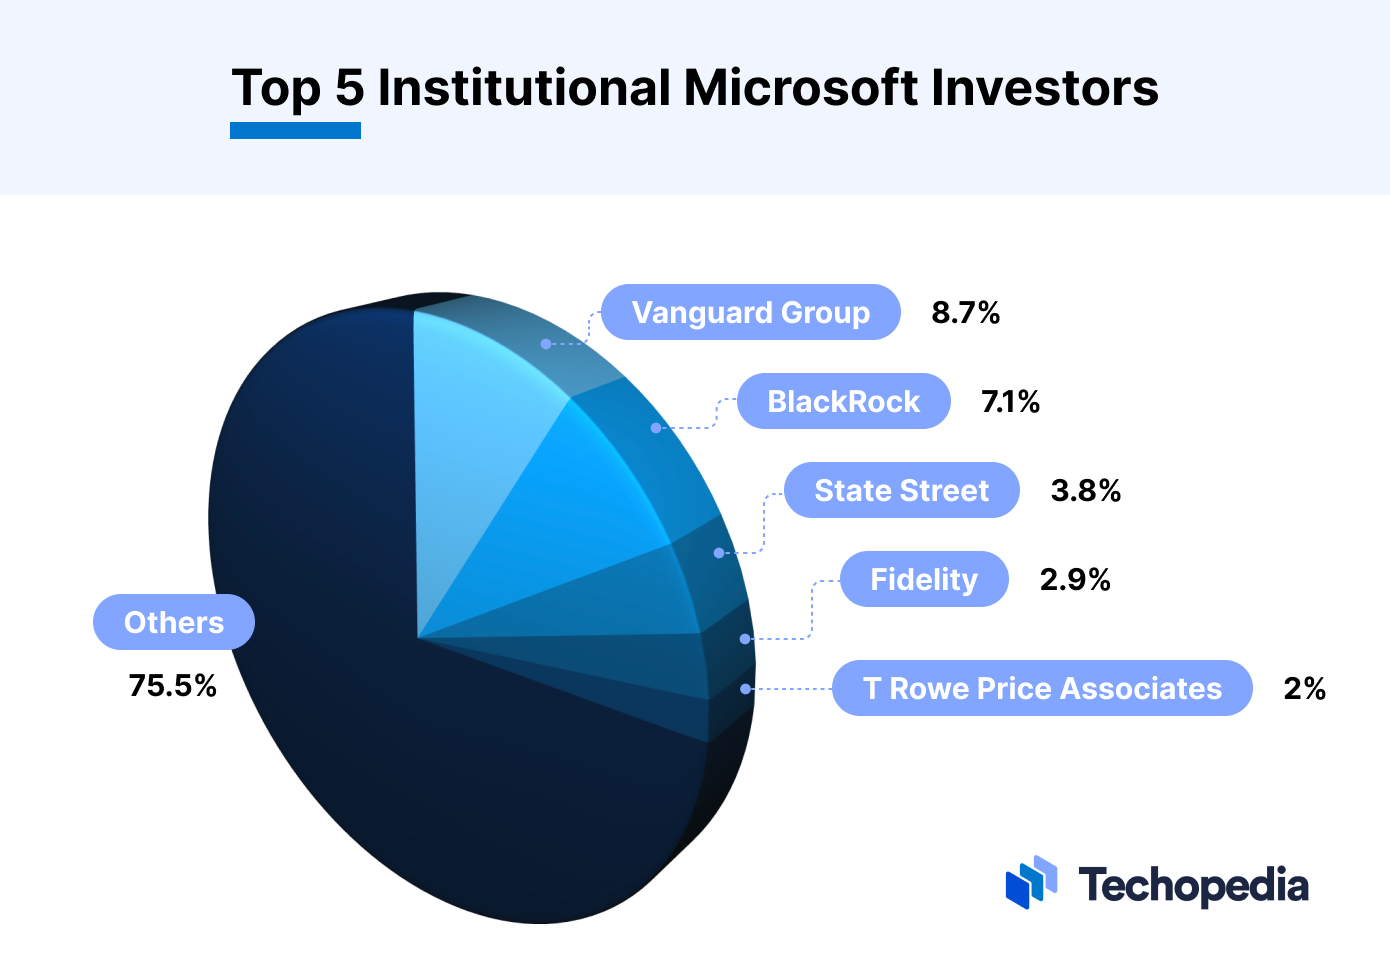 Top 5 Institutional Microsoft Investors